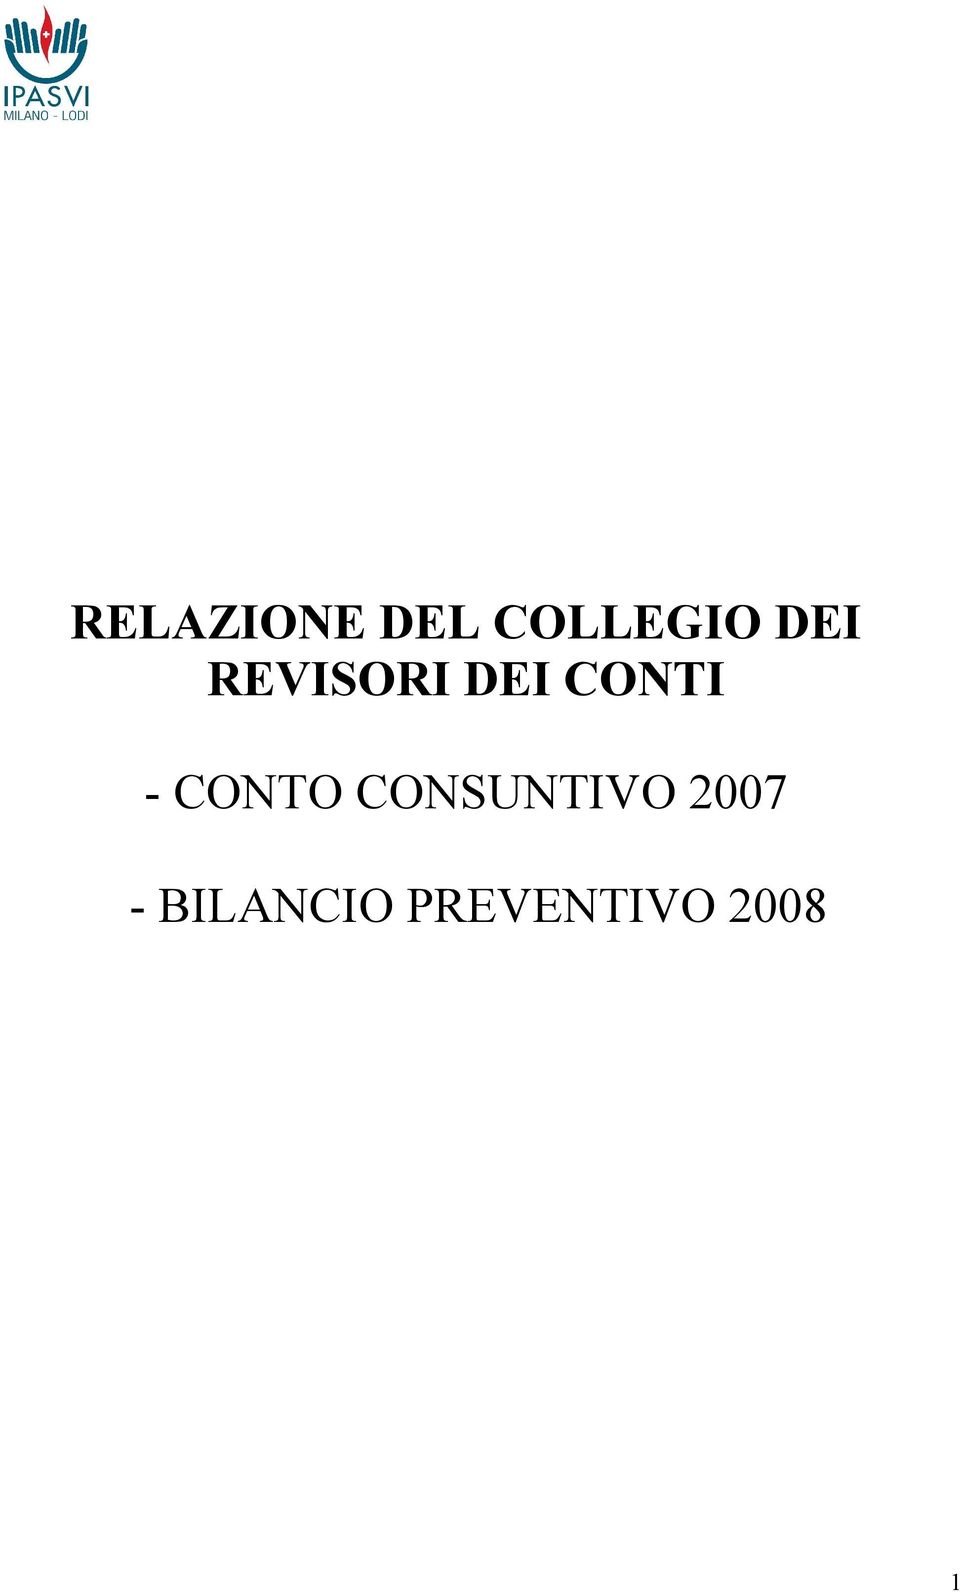 CONTO CONSUNTIVO 2007 -